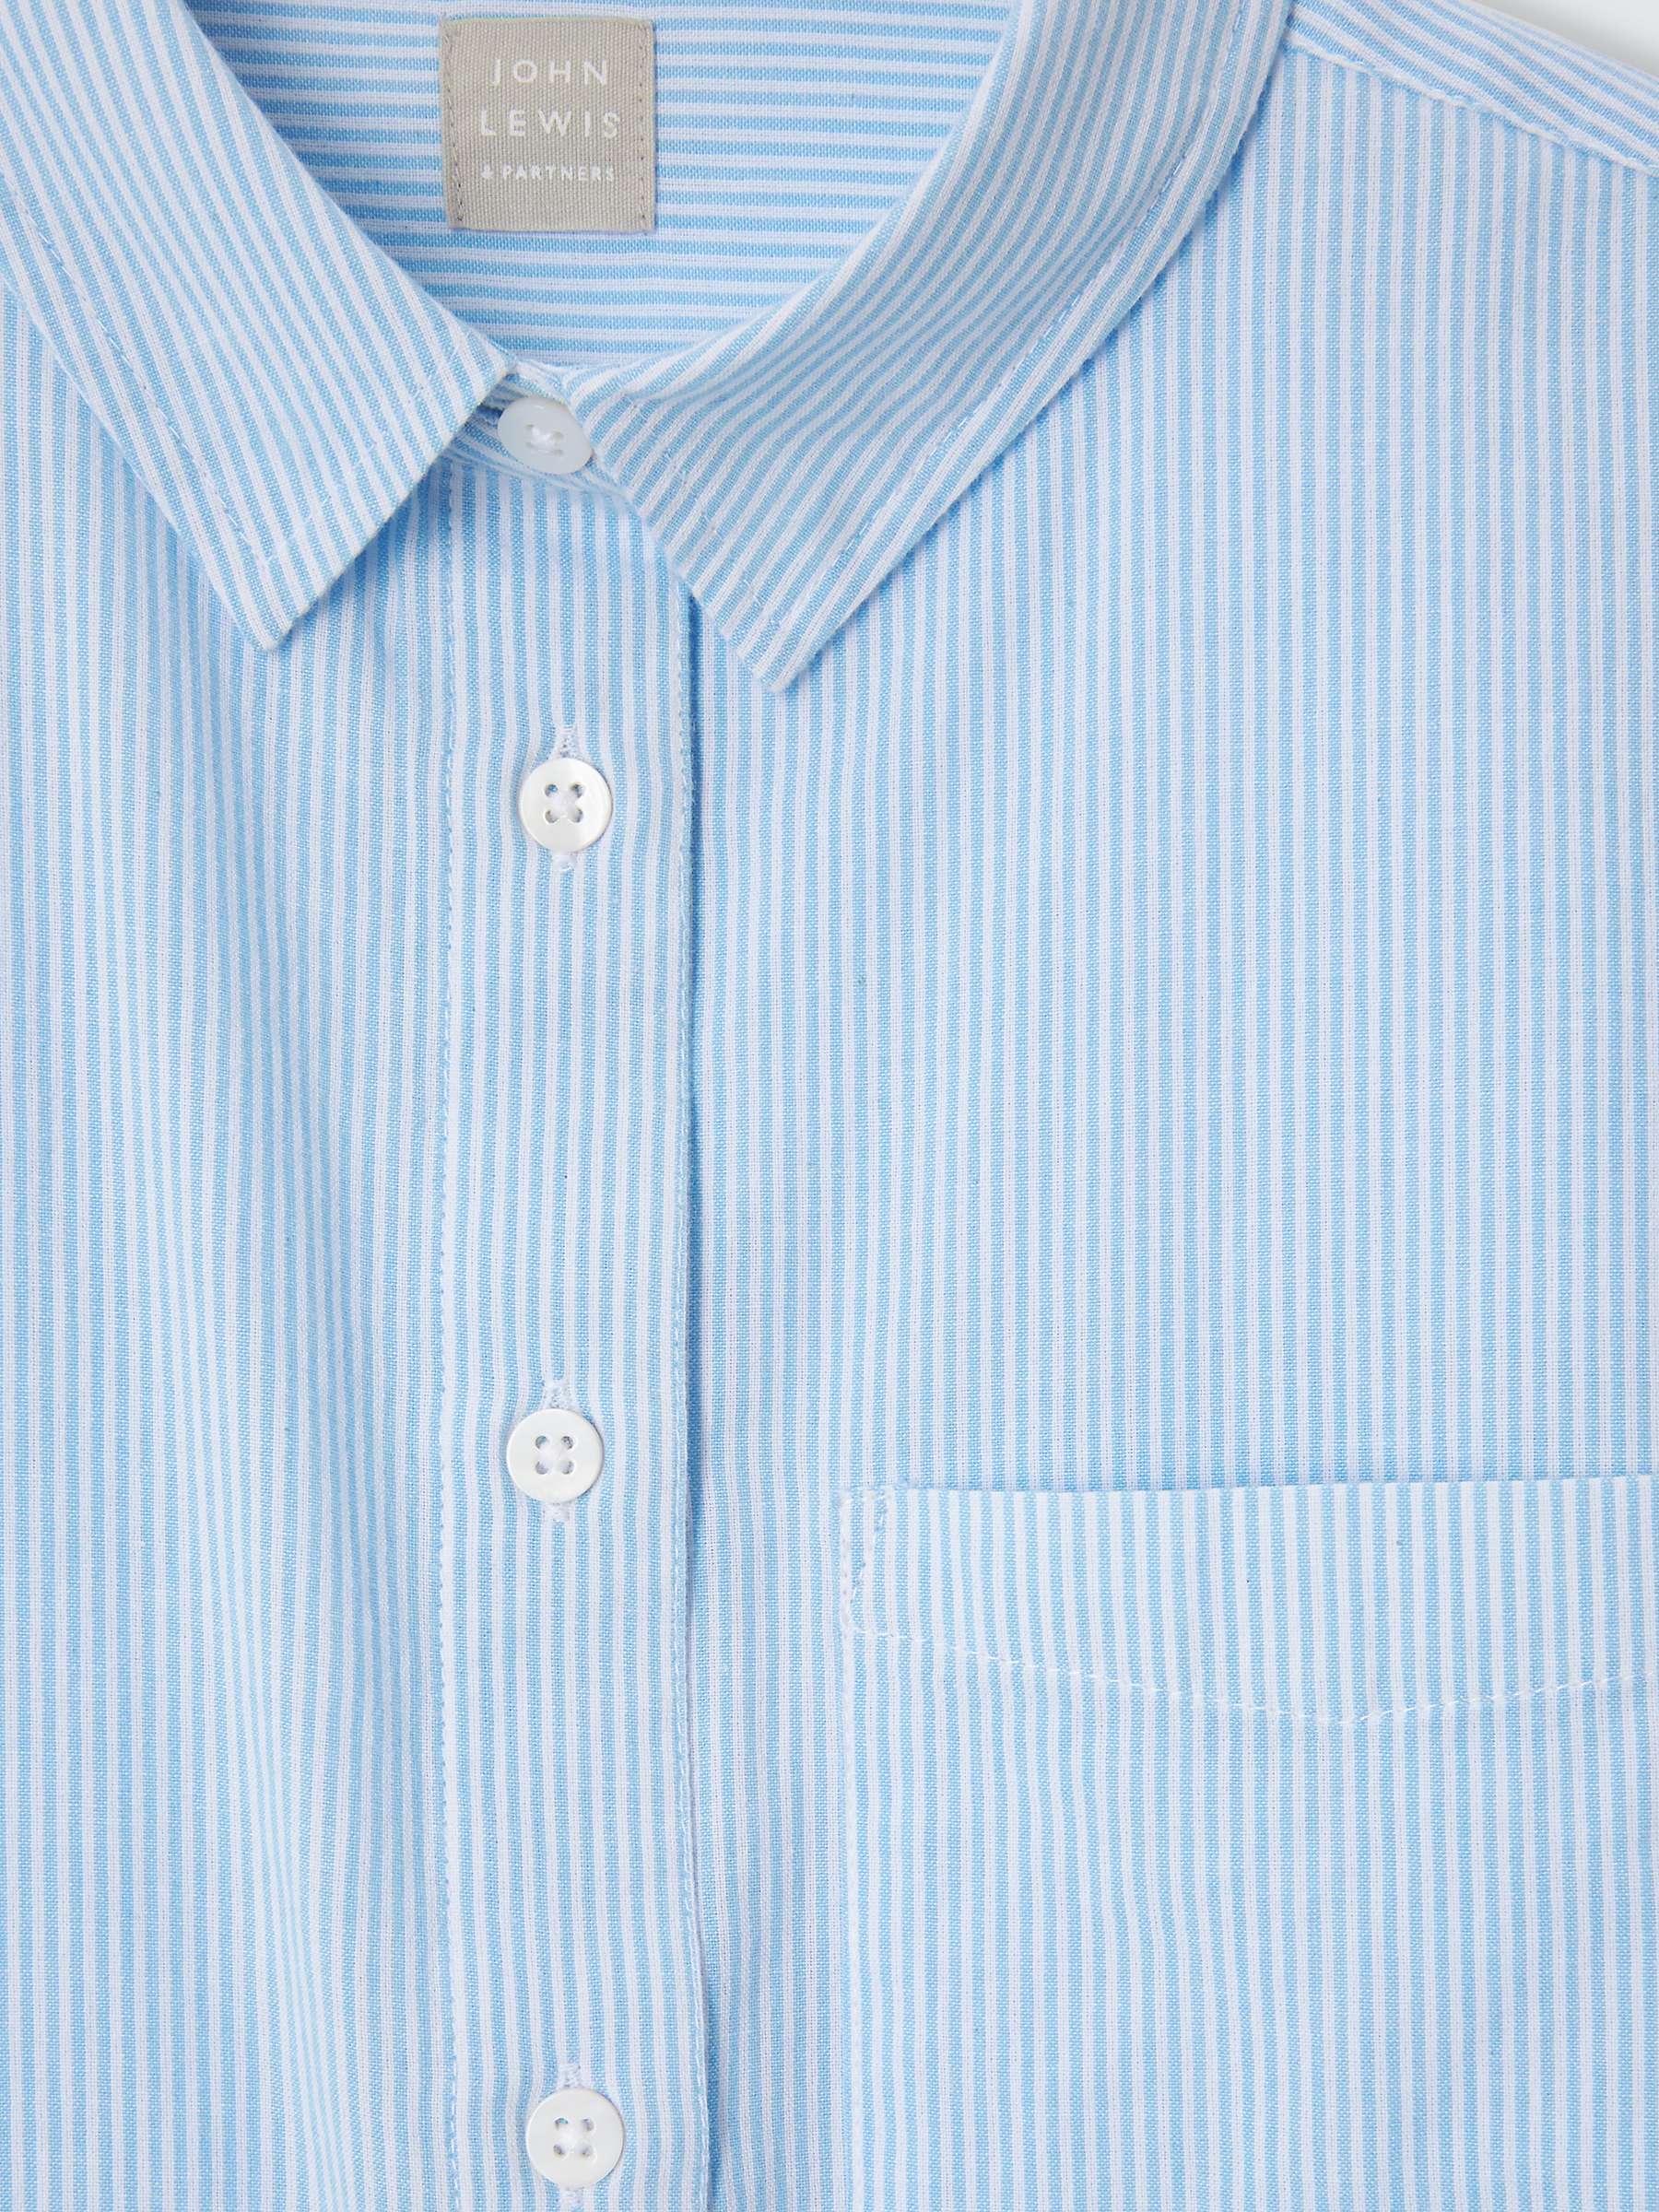 Buy John Lewis Kids' Stripe Long Sleeve Shirt, Blue/White Online at johnlewis.com